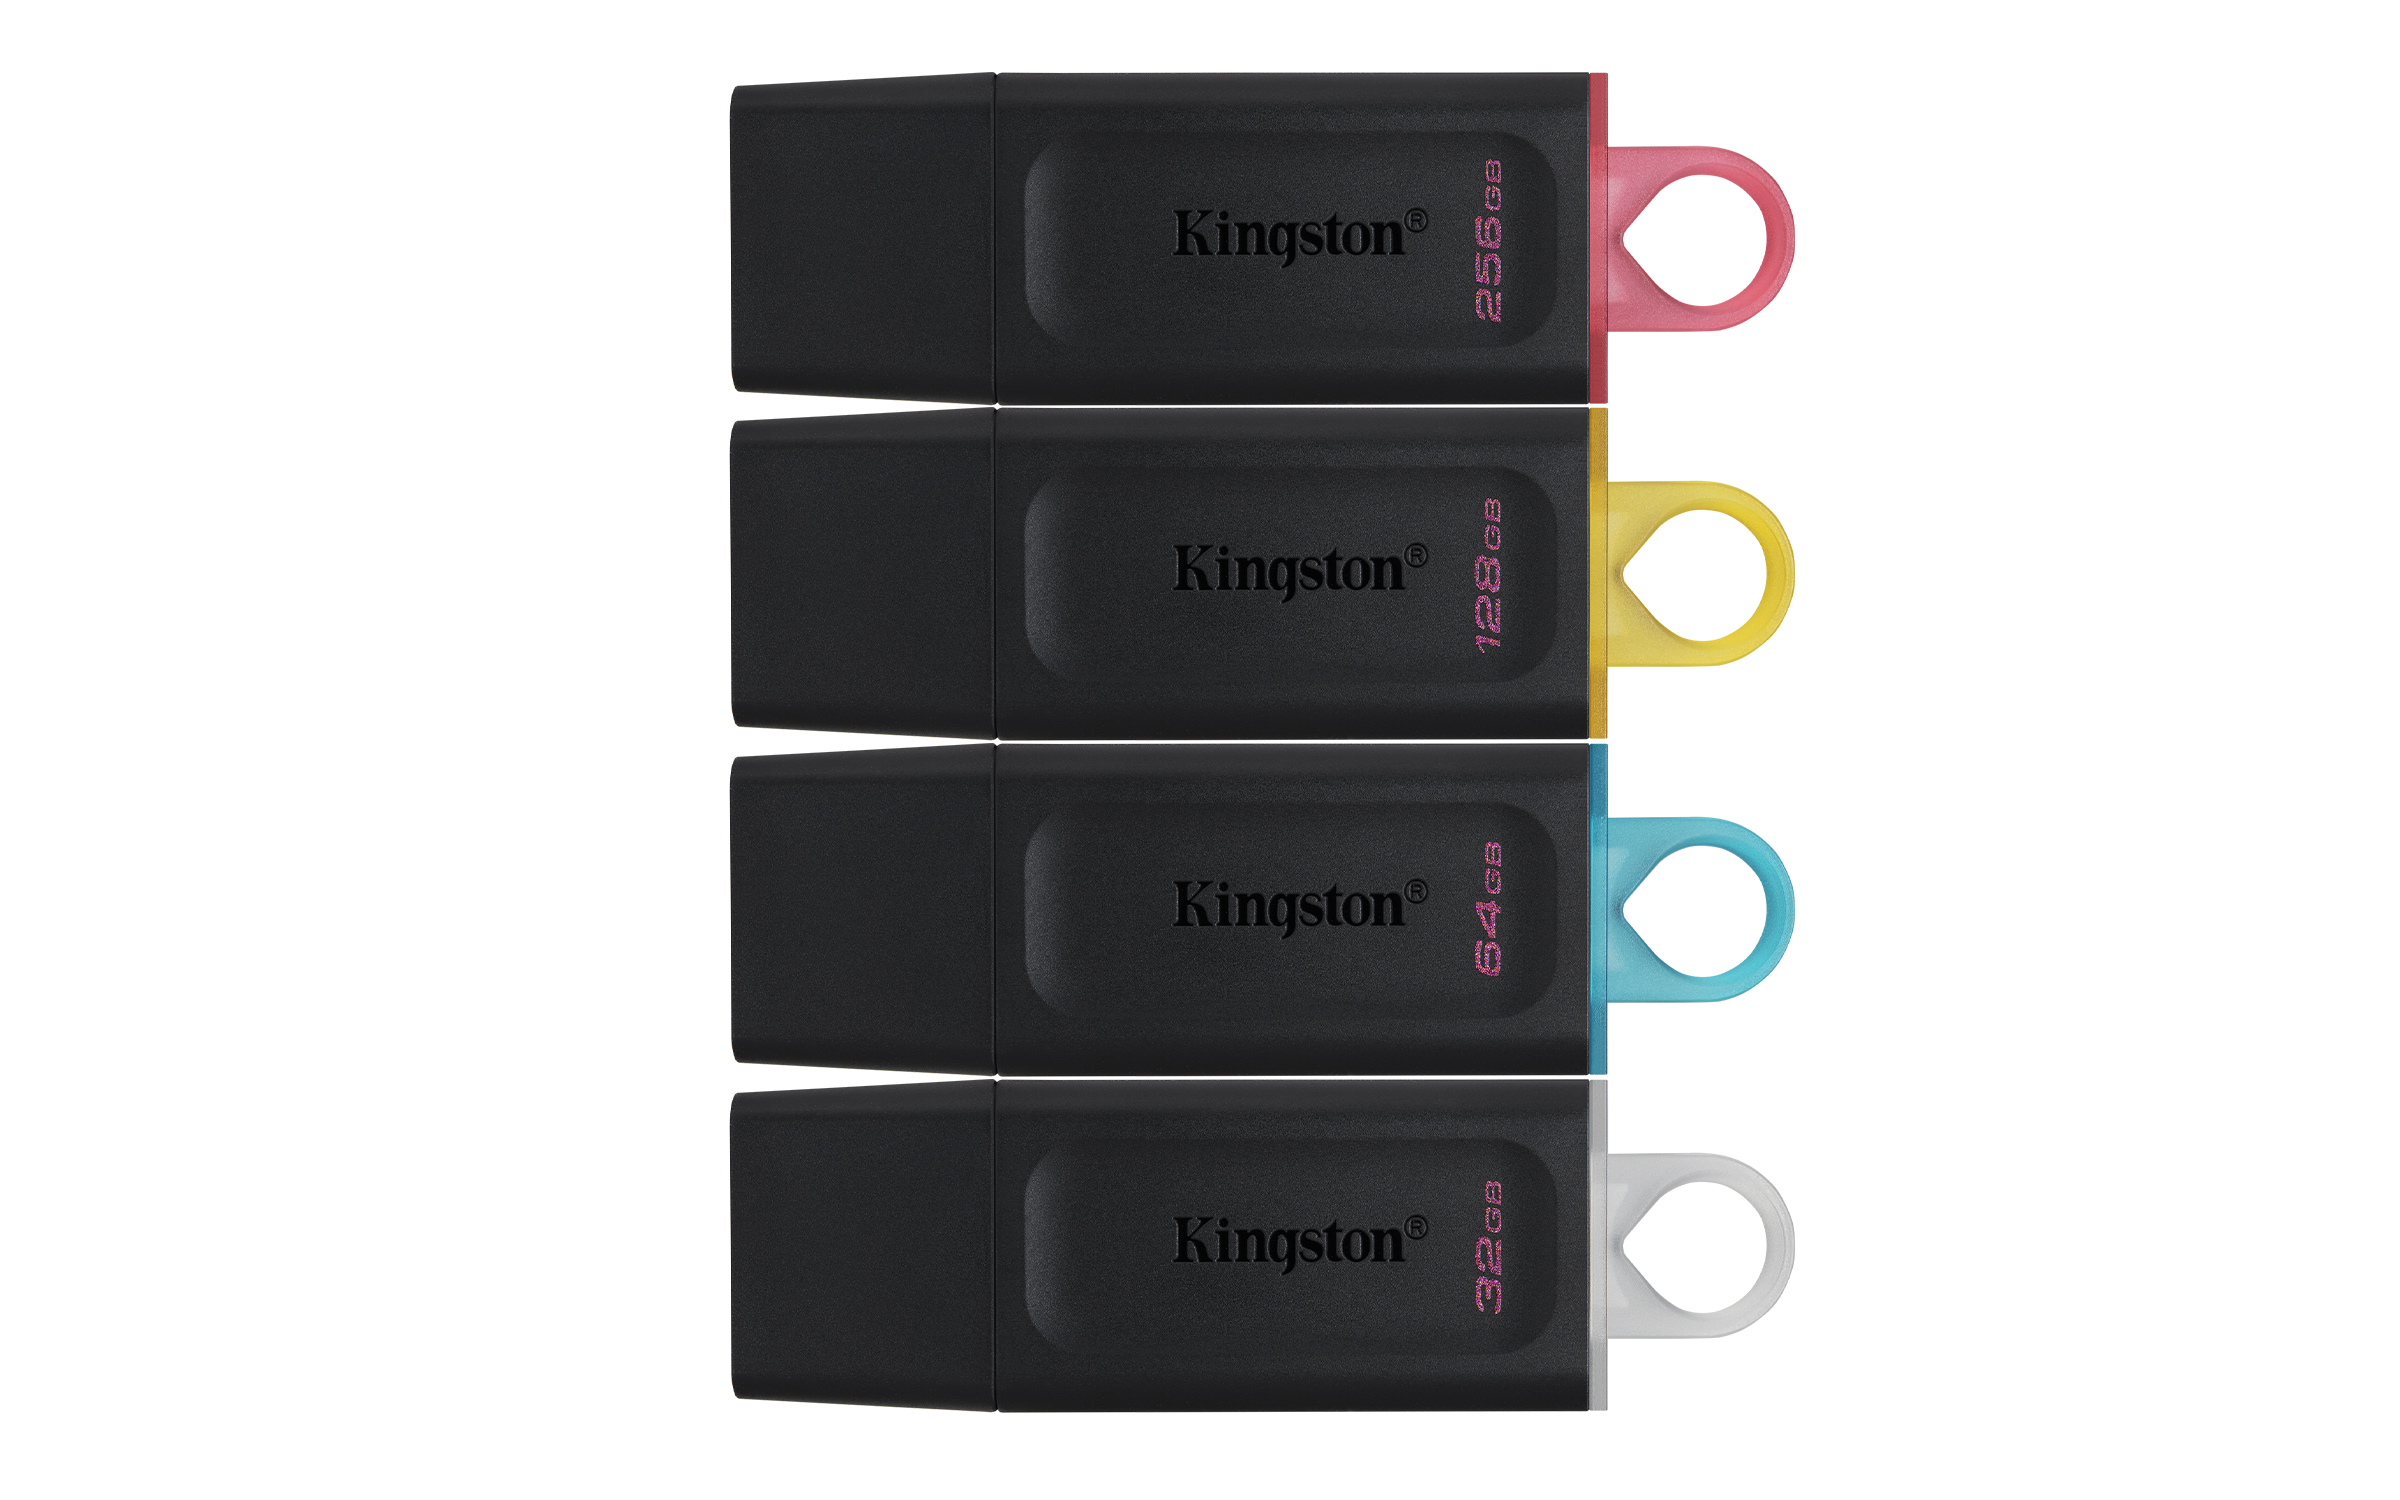 kingston dt exodia Kingston เปิดตัว DataTraveler USB Drives รุ่นใหม่ ช่วยเก็บความทรงจำที่ดีที่สุดในทุกที่ทุกเวลา ต้อนรับปีใหม่ที่กำลังจะมาถึง!